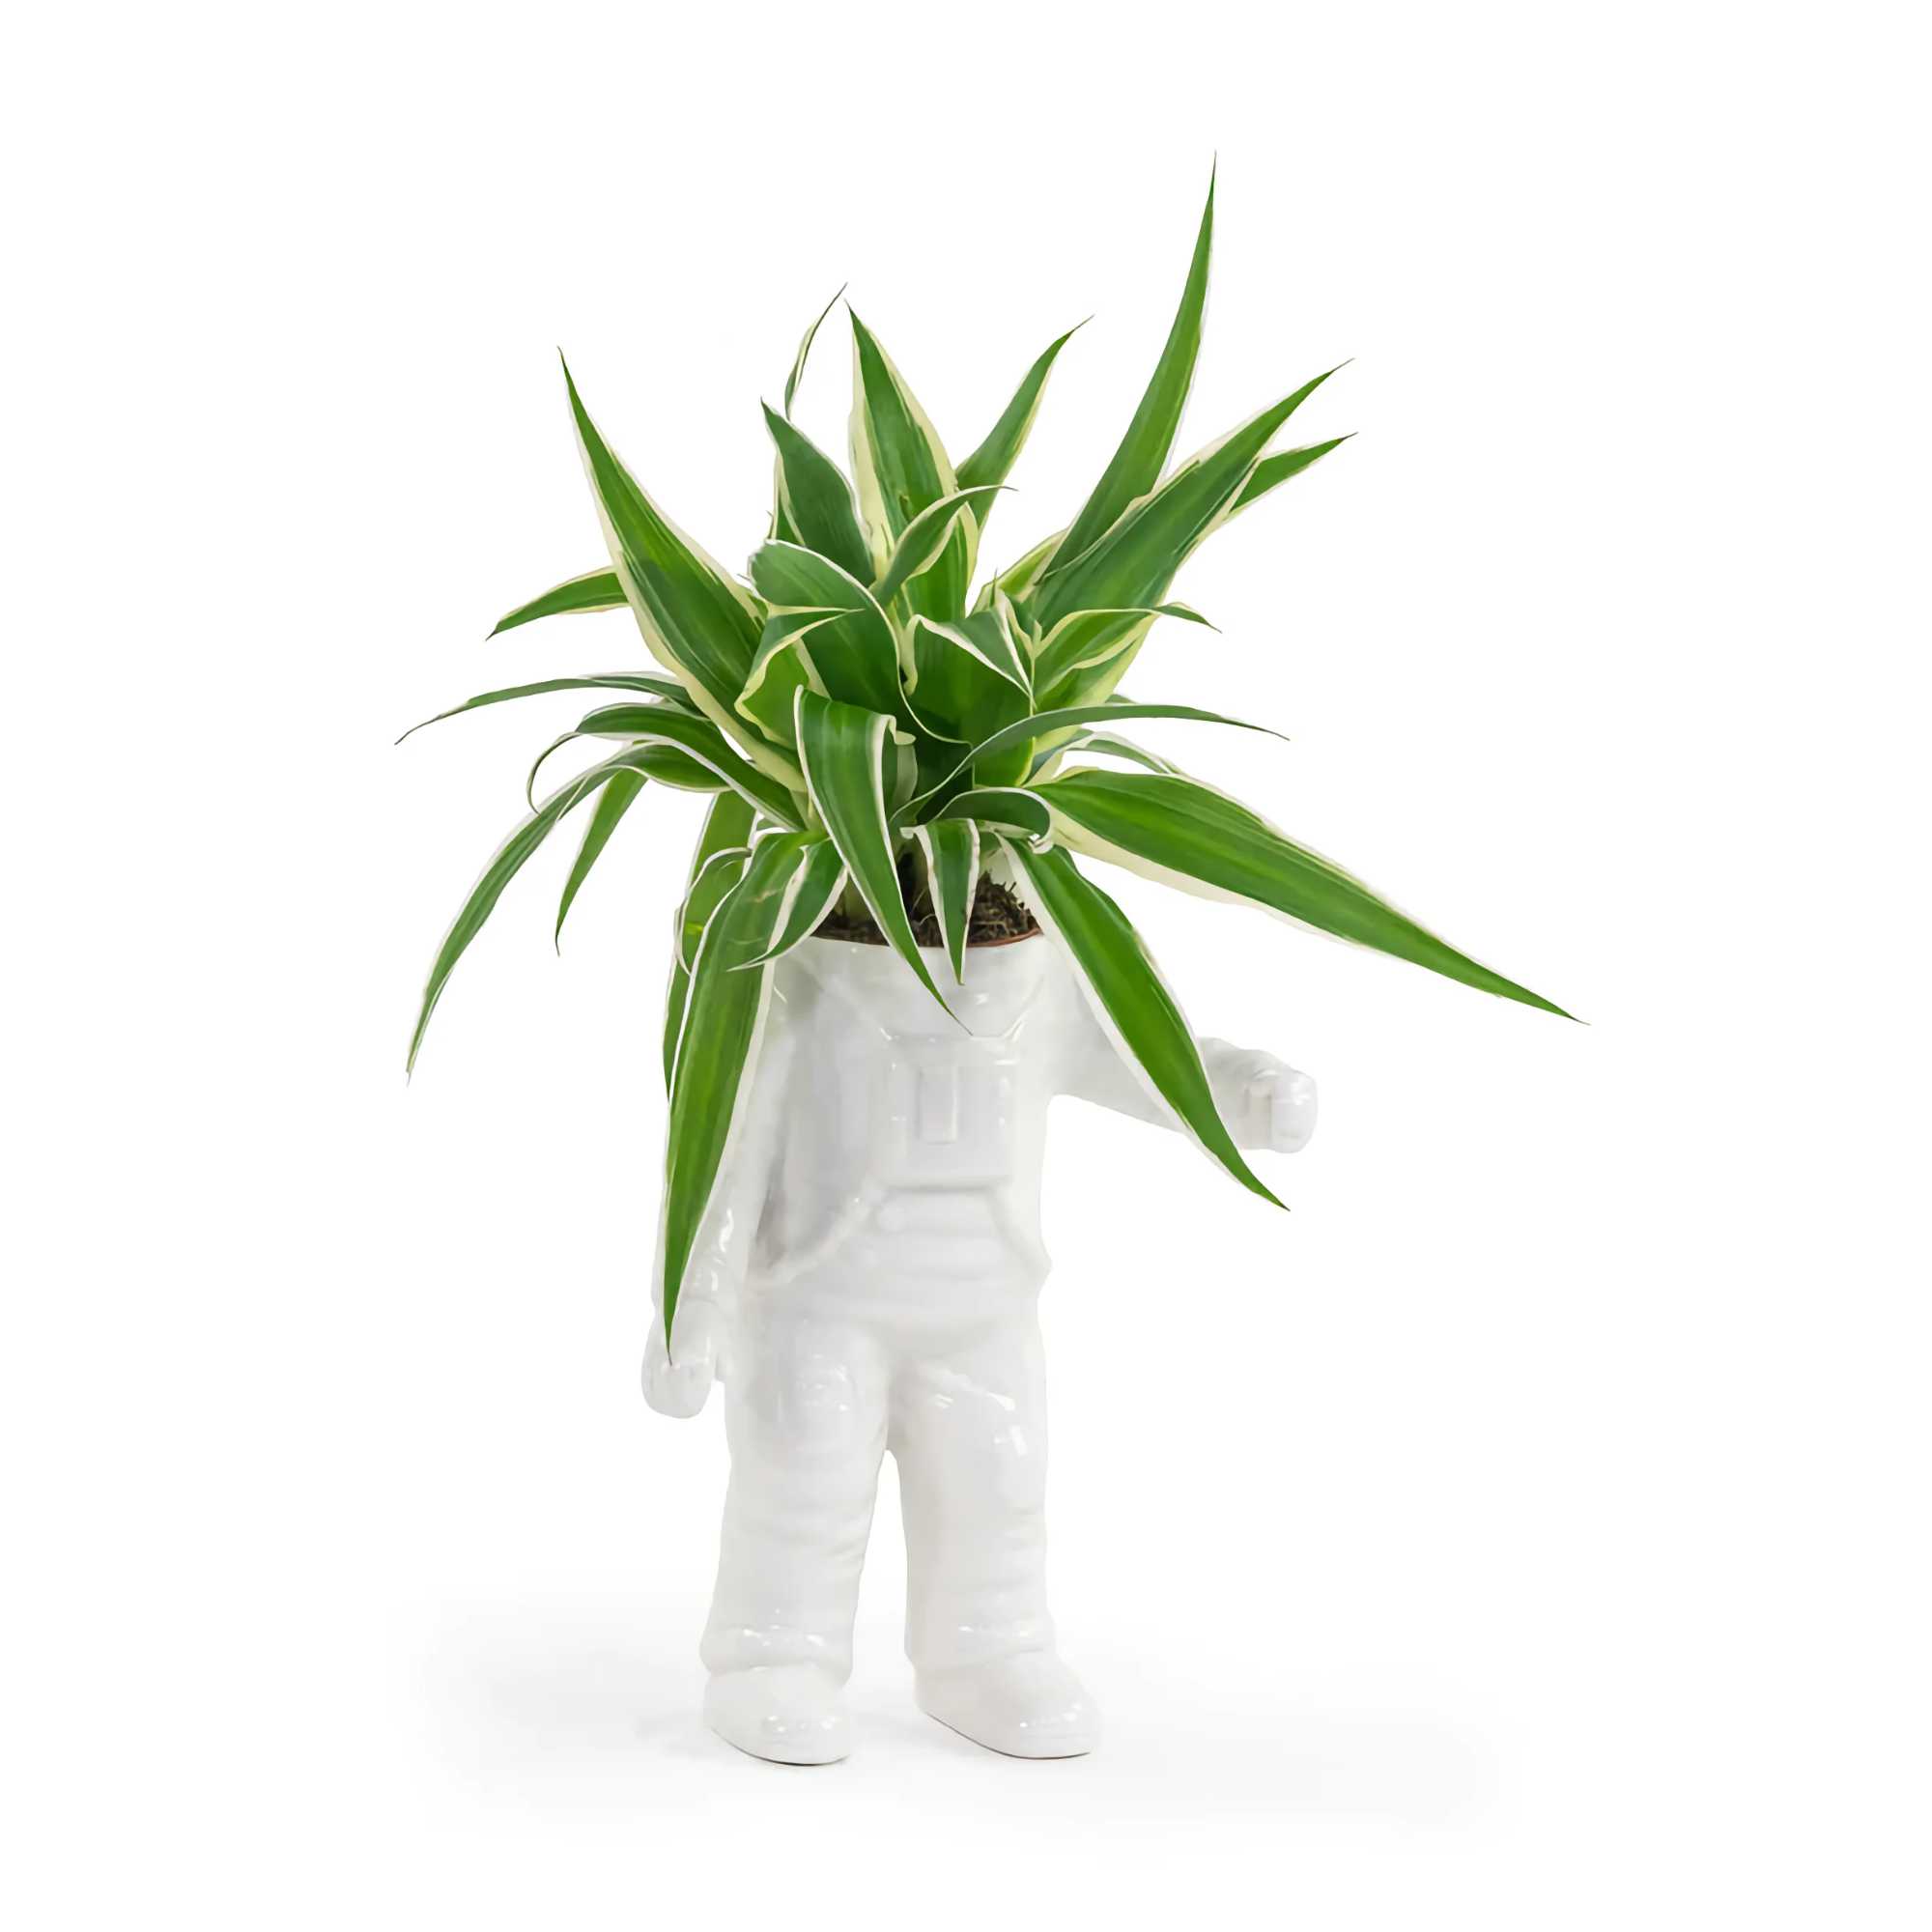 Bitten design Astronaut planter small